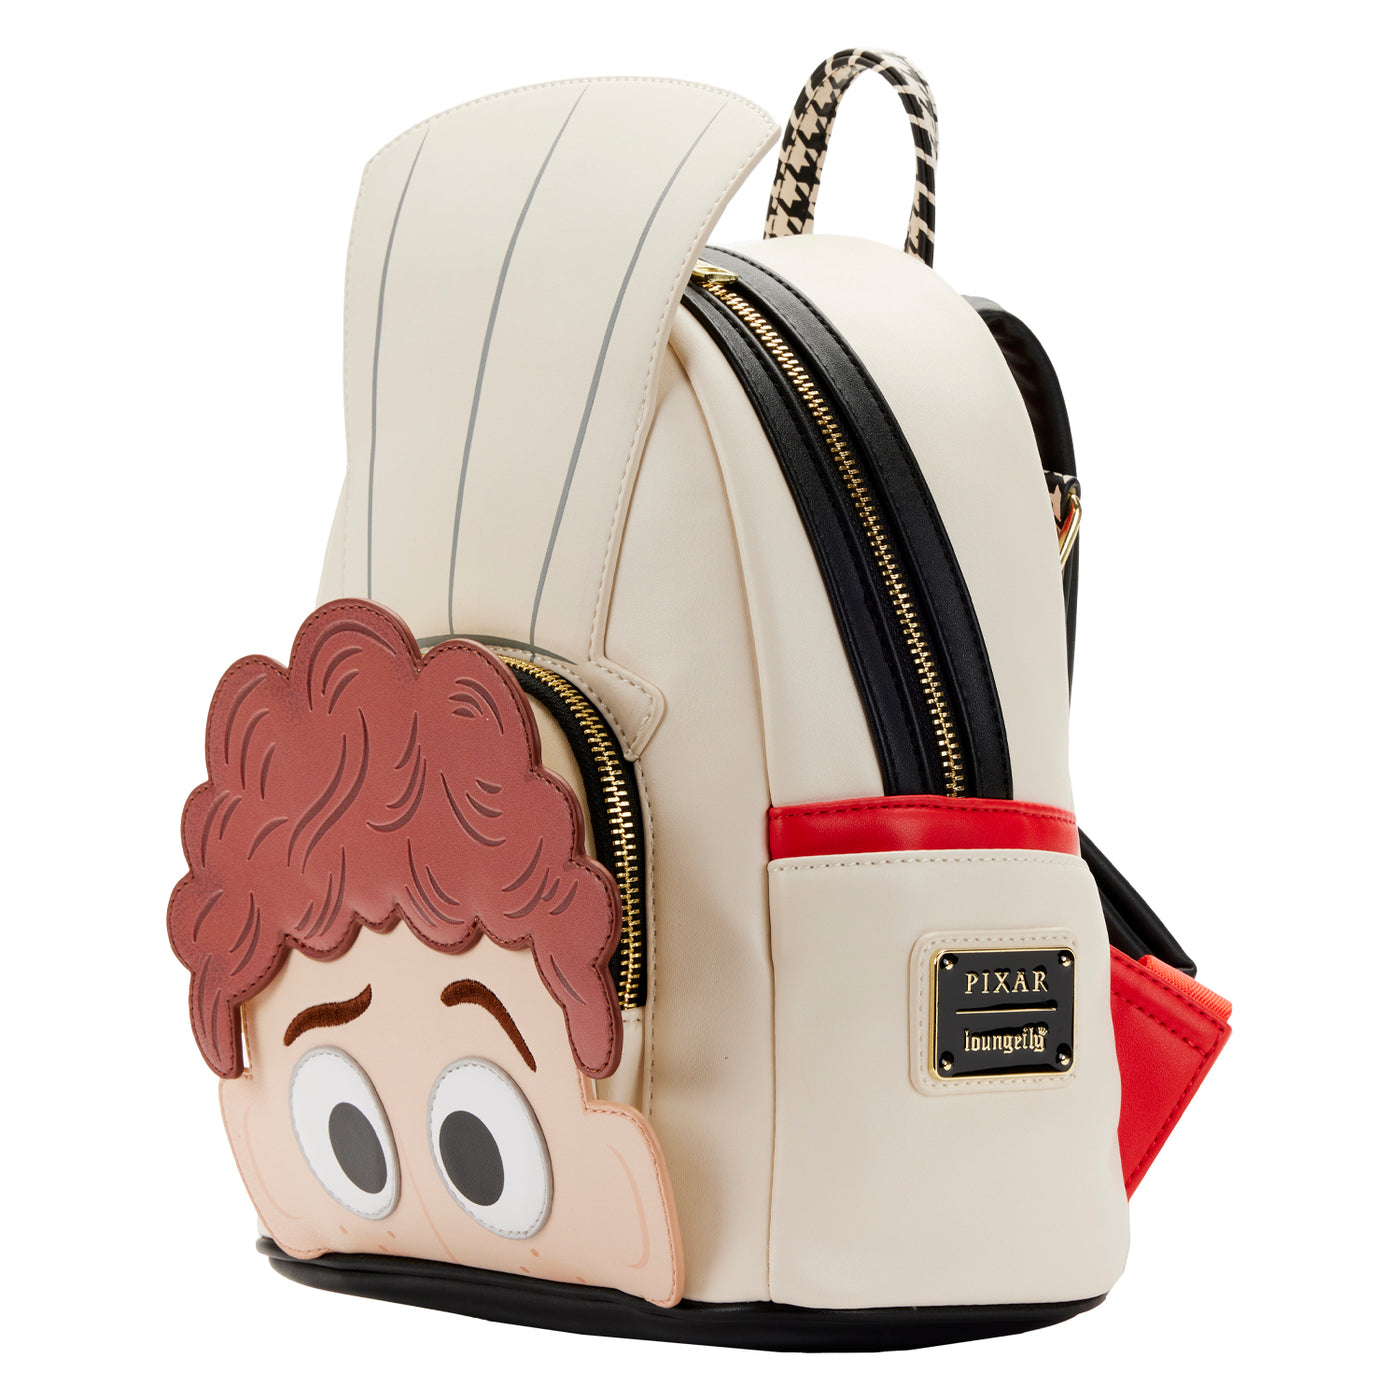 Disney Pixar Ratatouille 15th Anniversary Mini Backpack